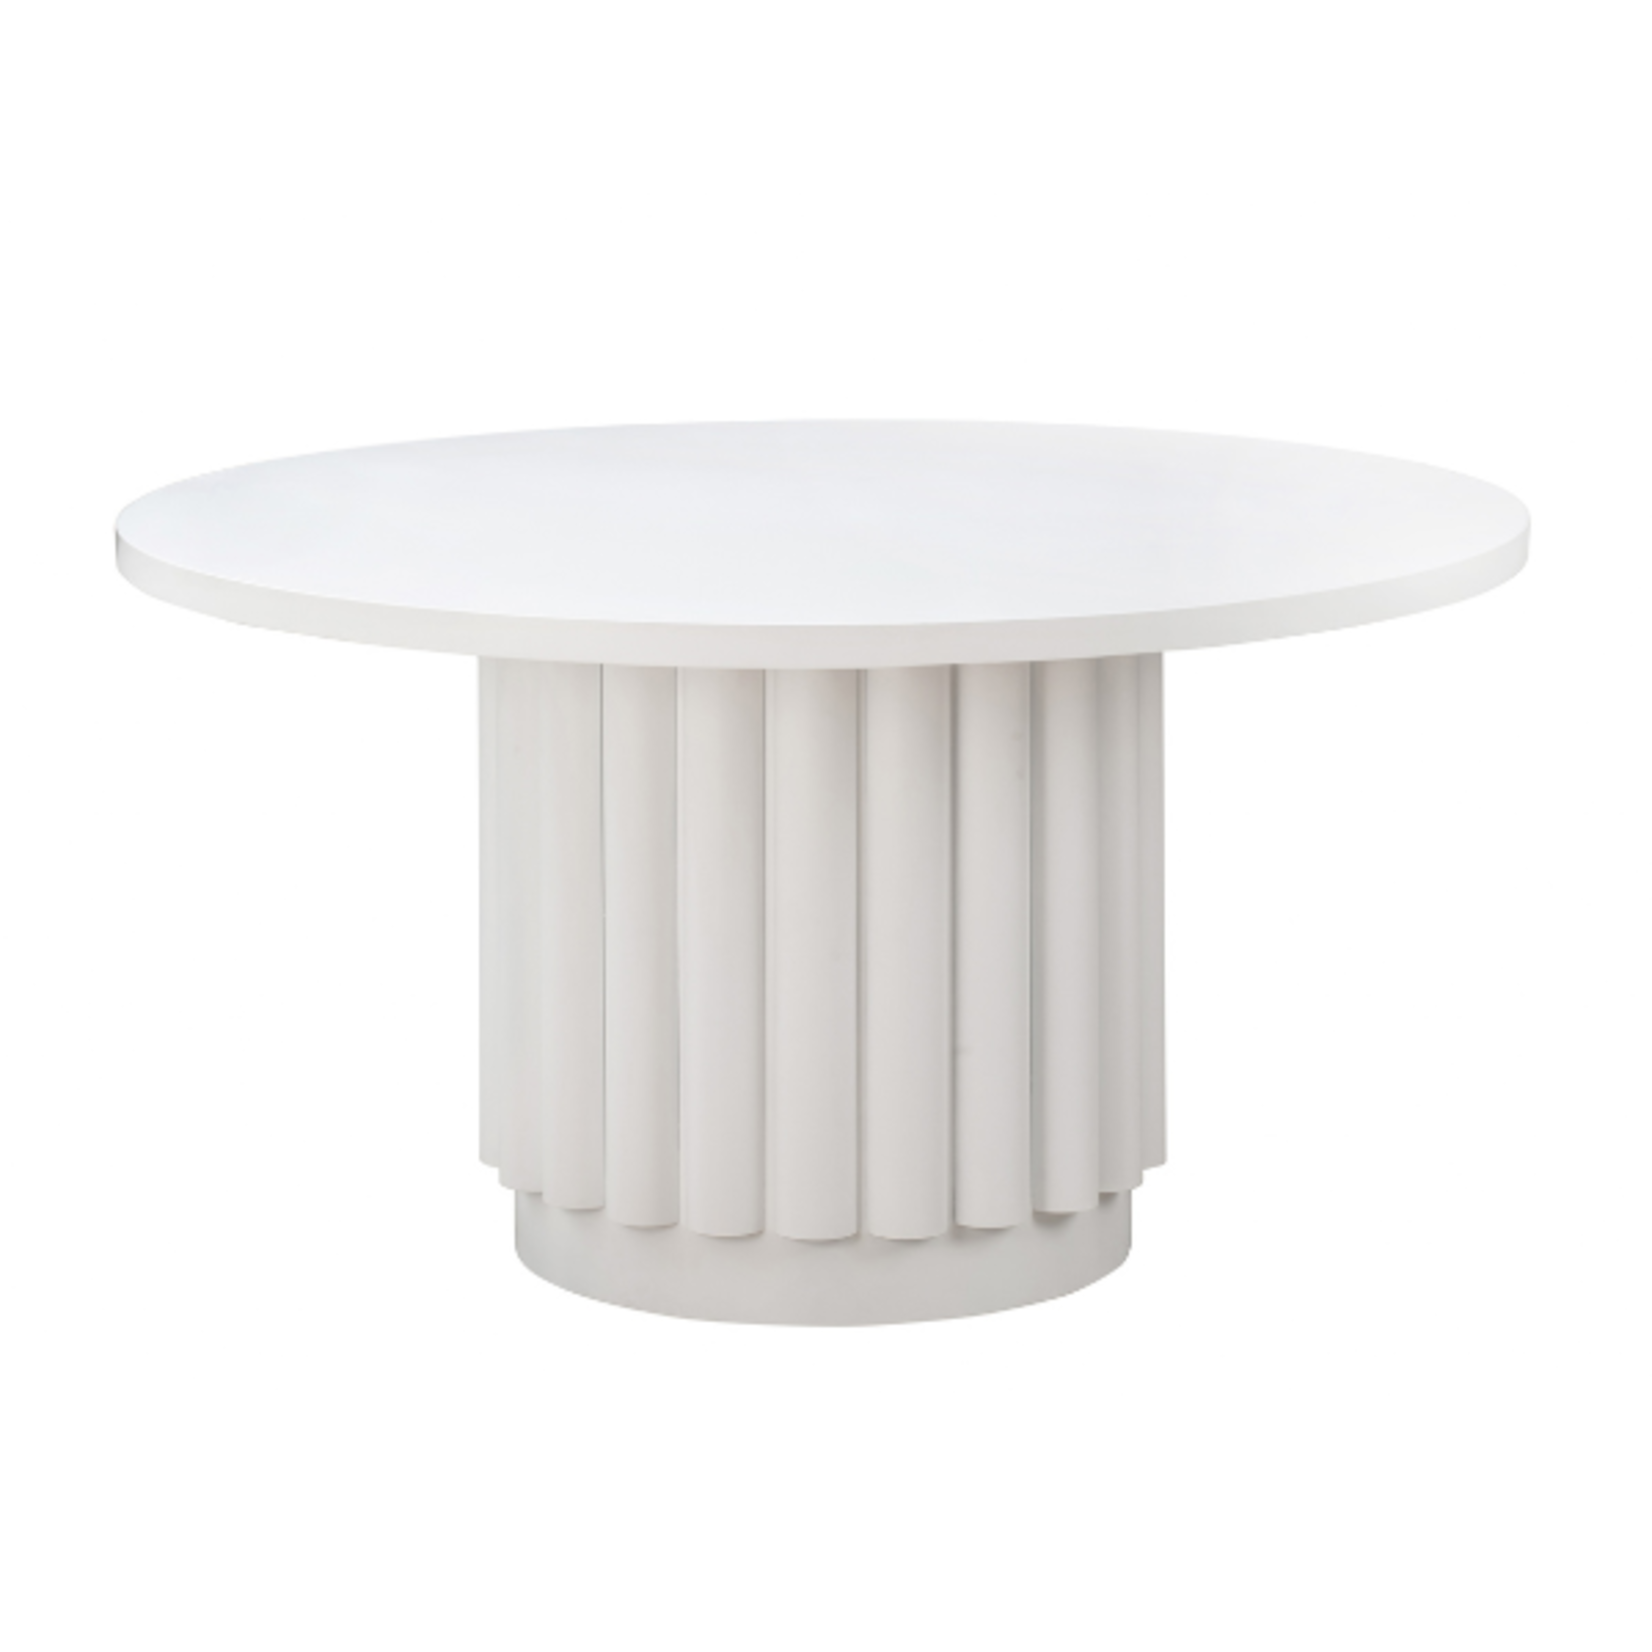 Tov KELI 55" WHITE ROUND DINING TABLE